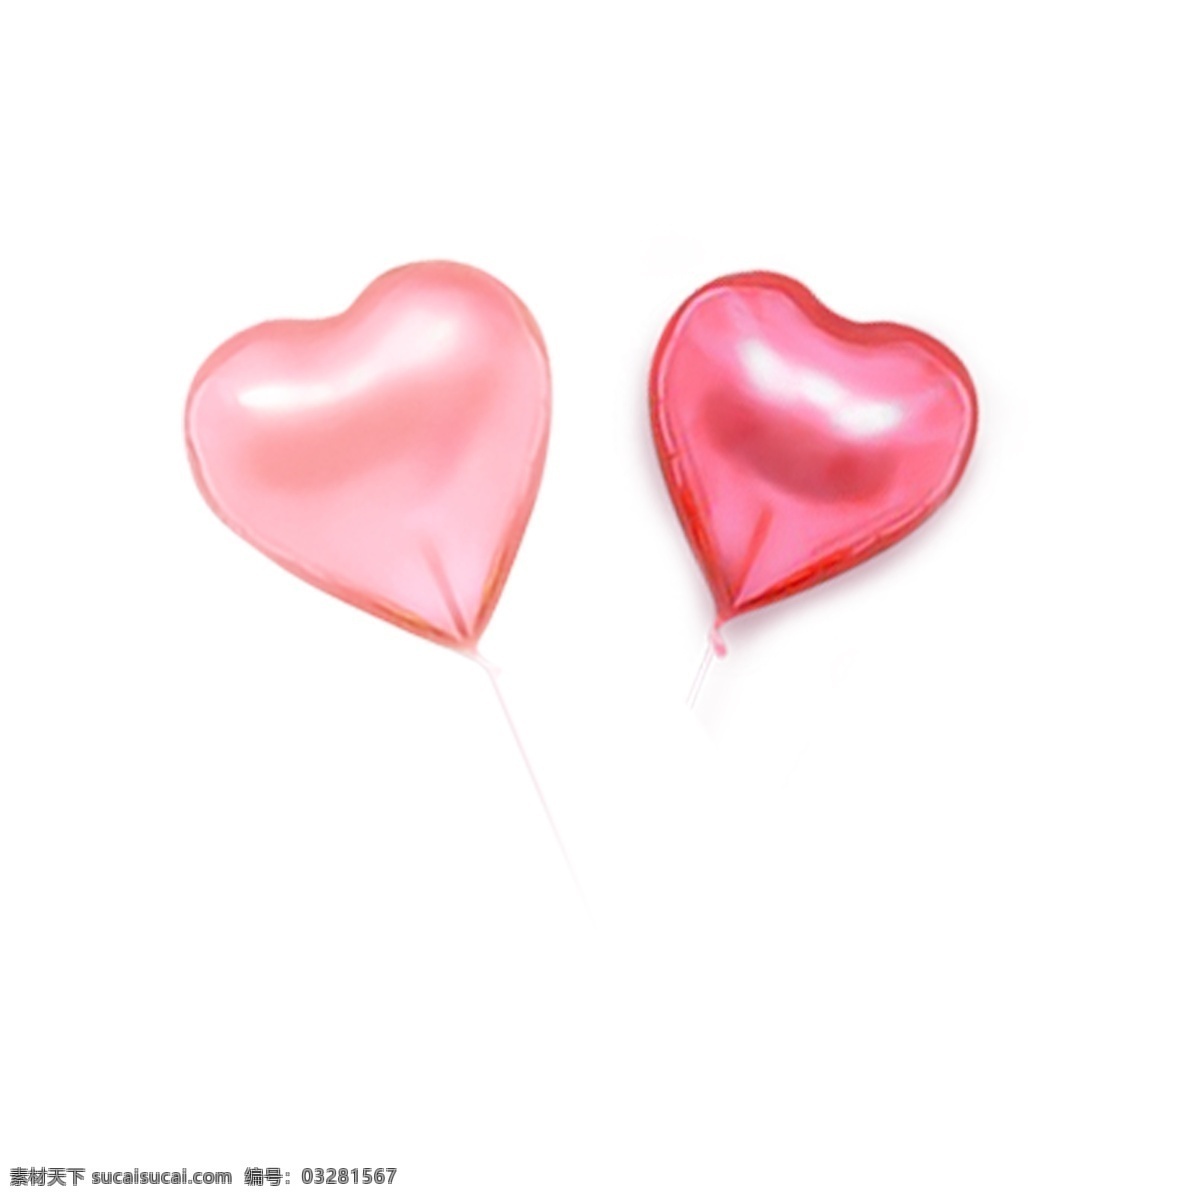 两 只 粉红色 气球 元素 粉红 装饰